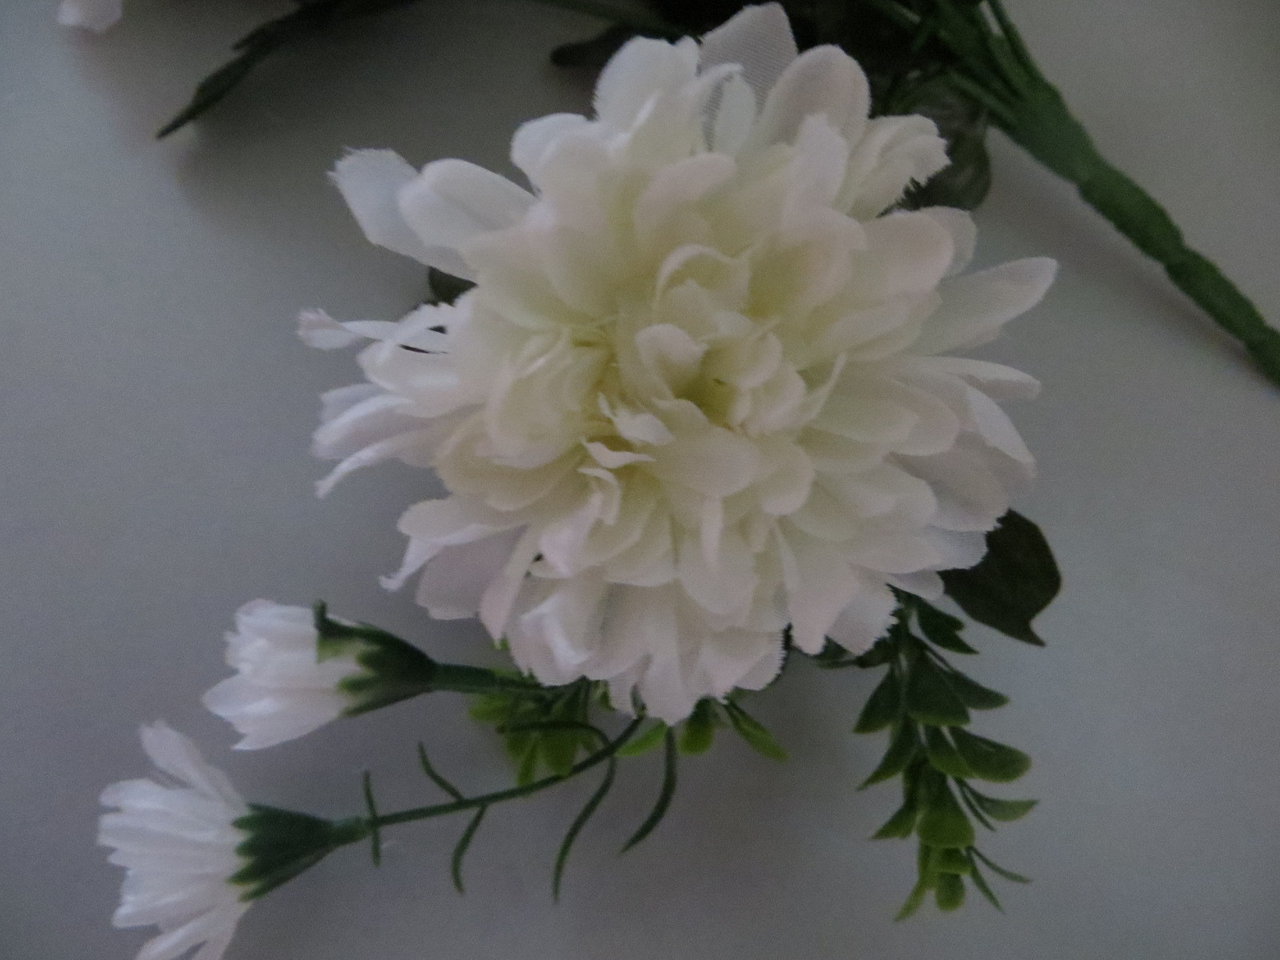 Chrysanthemenstrauß mit 13 Stielen, 10 großen Blüten und 6 kleinen Blüten Farbe: weiß-creme